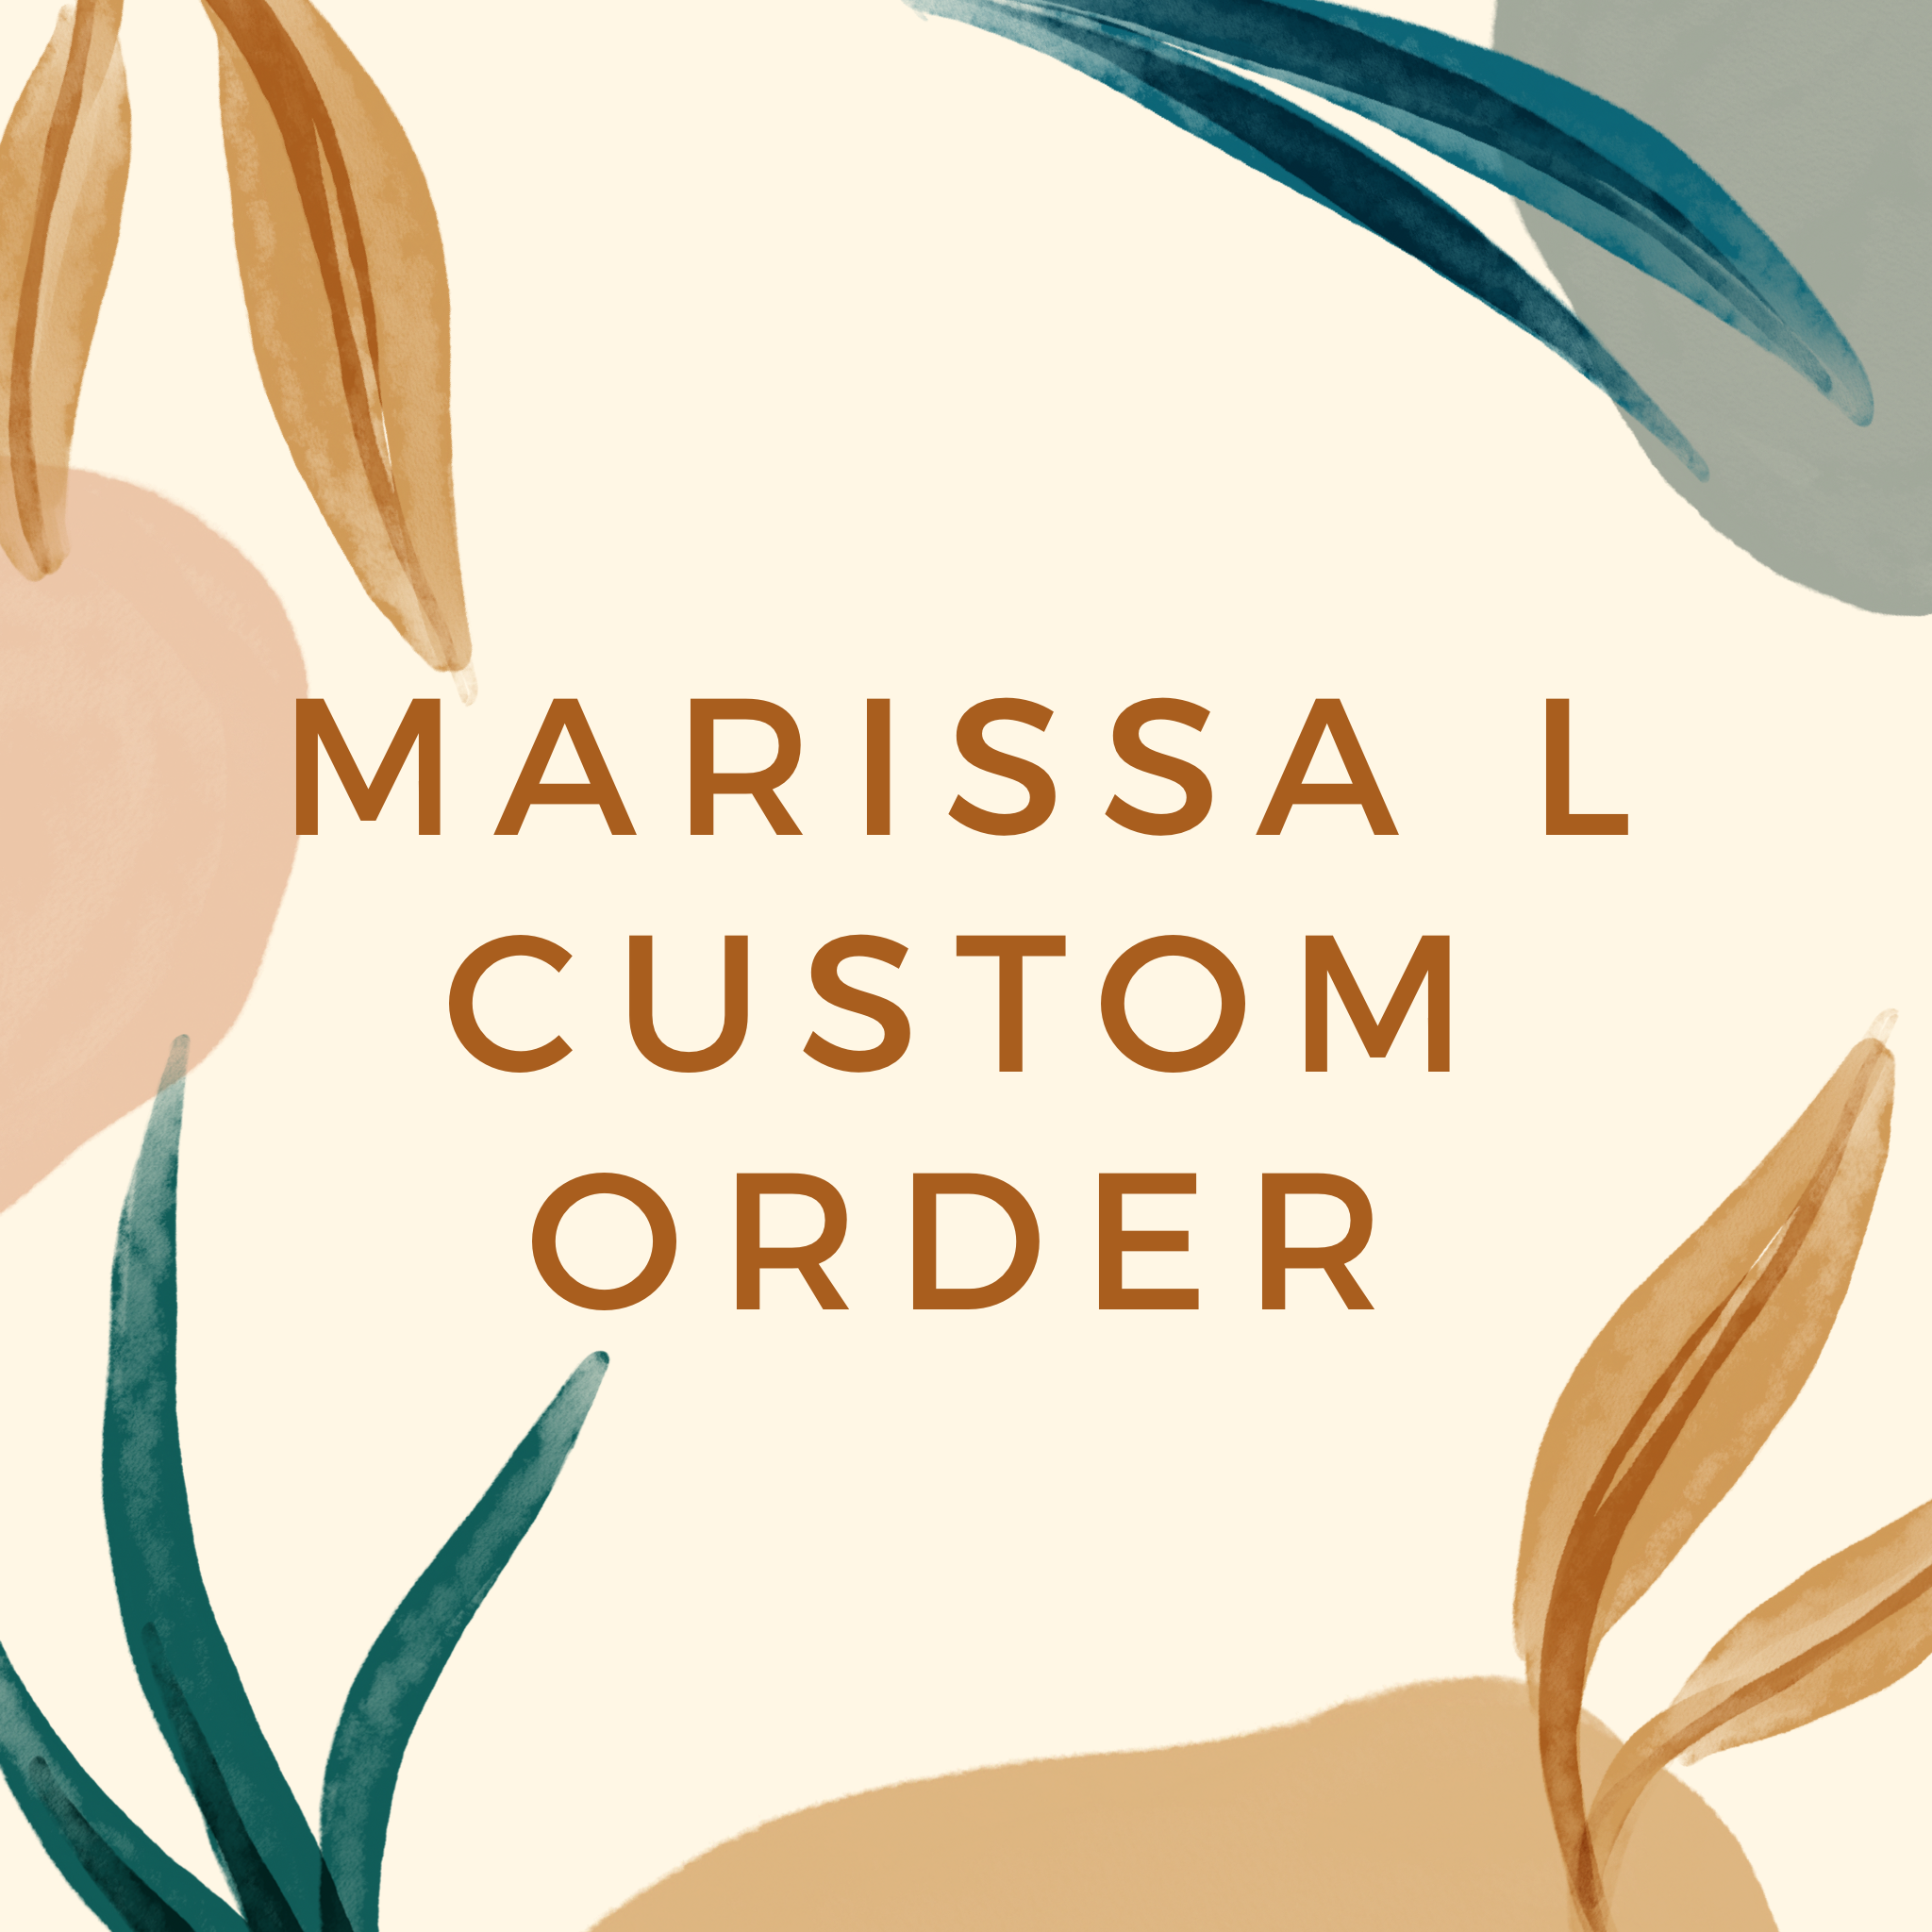 Marissa S Custom Order